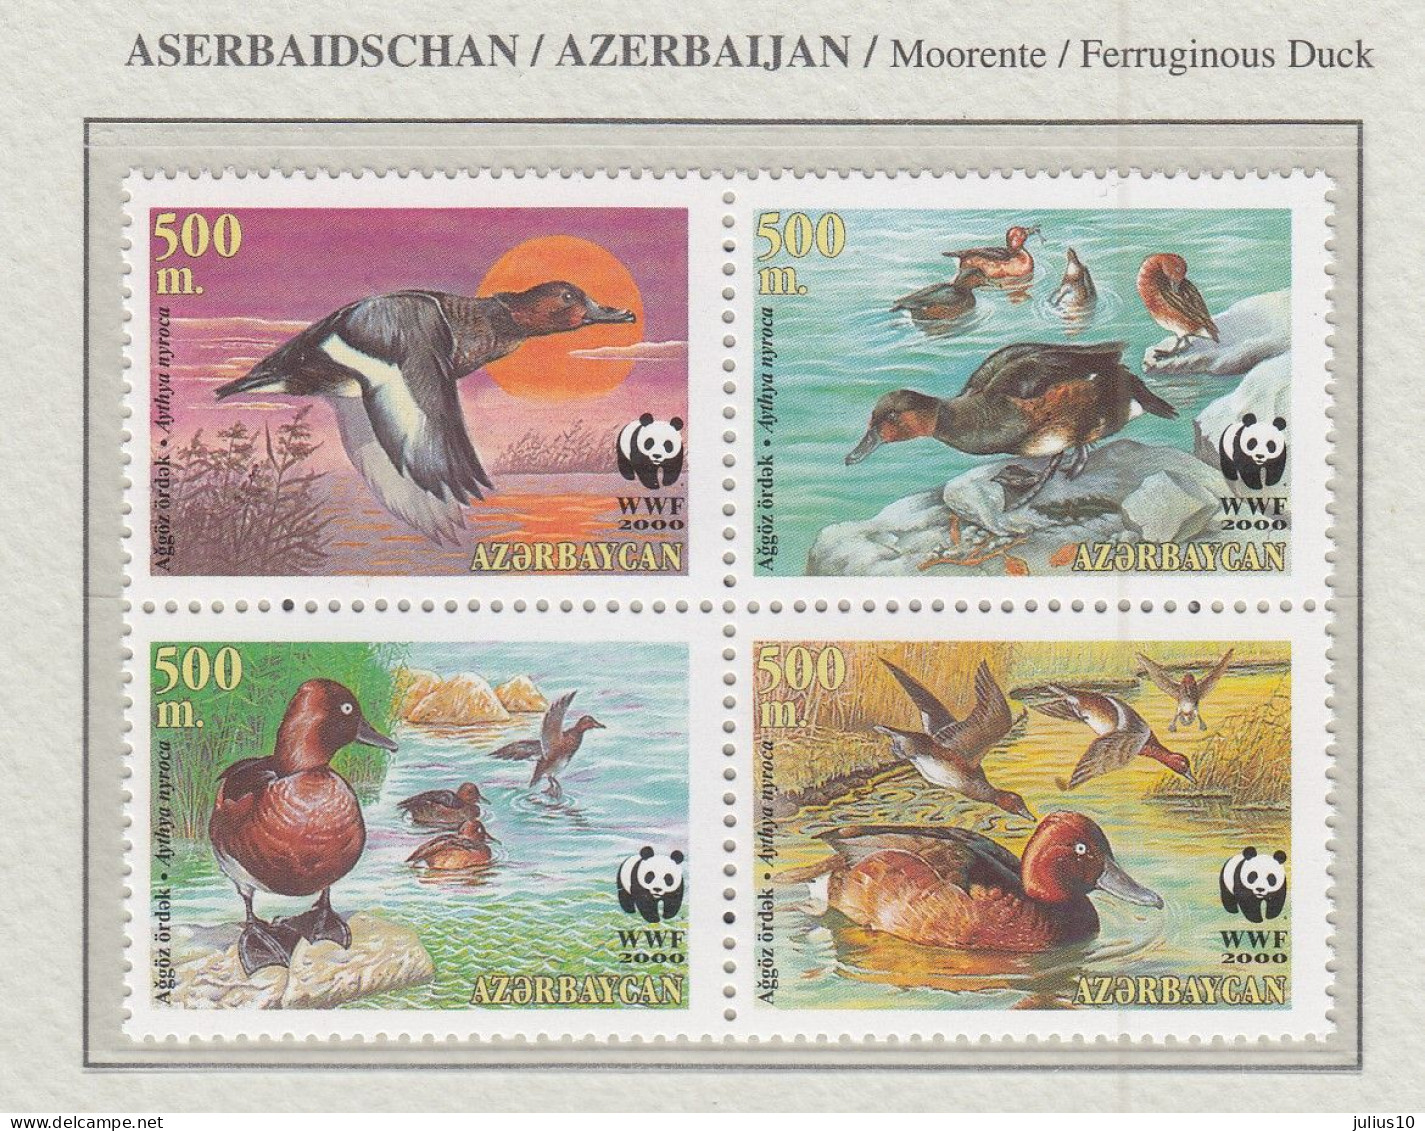 AZERBAIJAN 2000 WWF Ferruginous Ducks Birds MNH Fauna 622 - Ducks